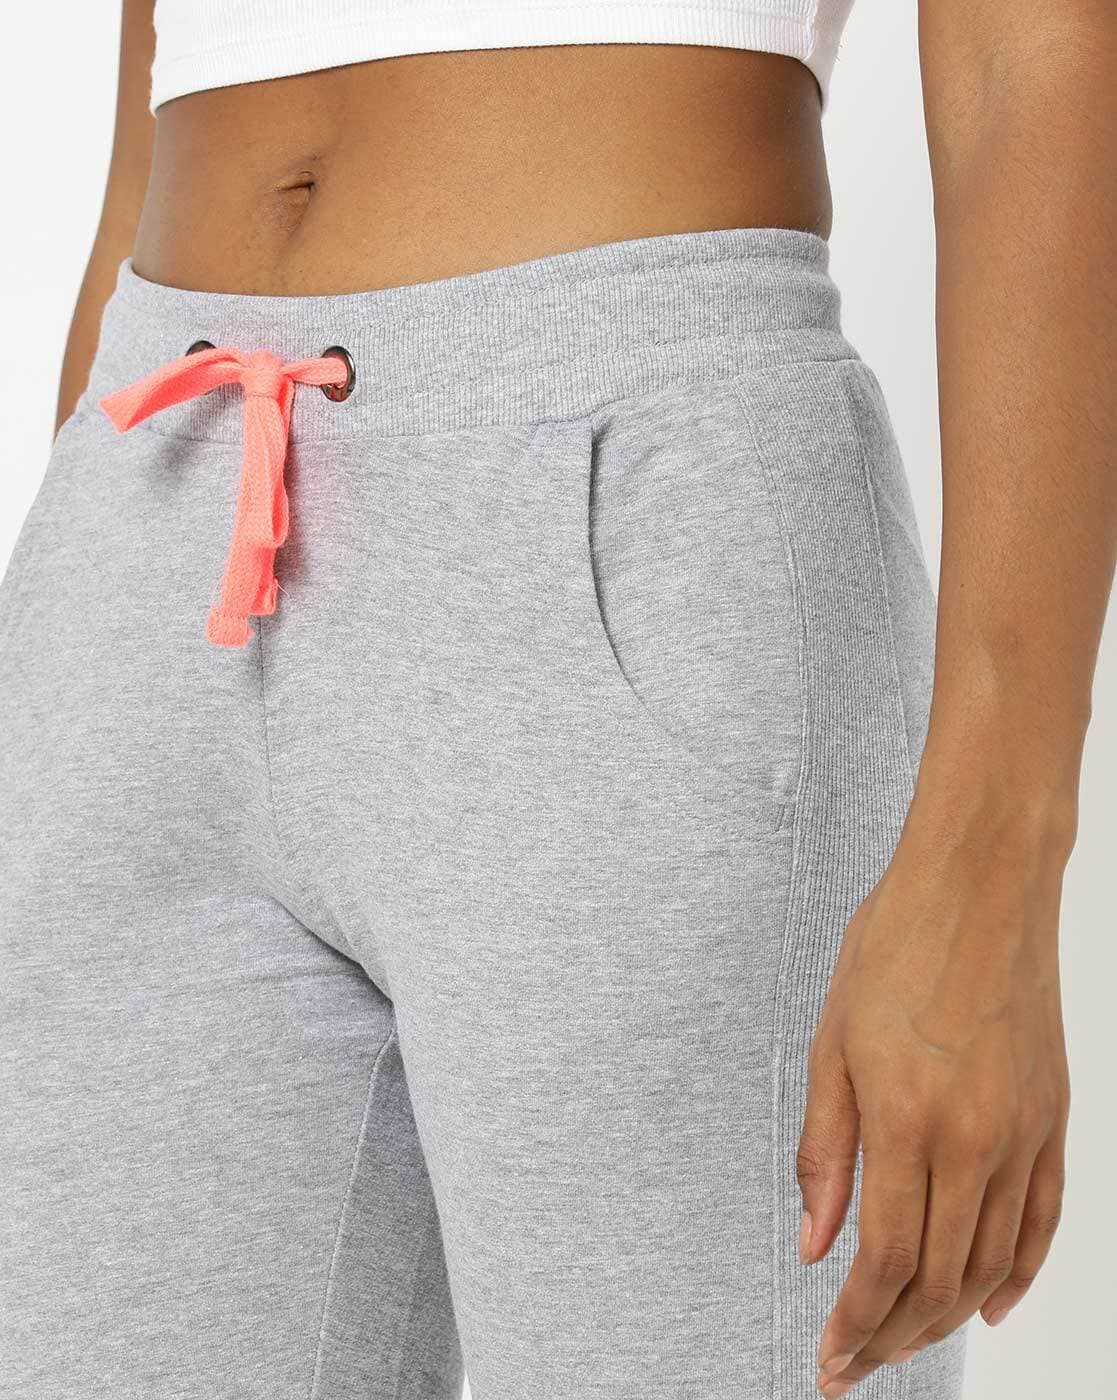 Buy Grey Leggings for Women by Teamspirit Online